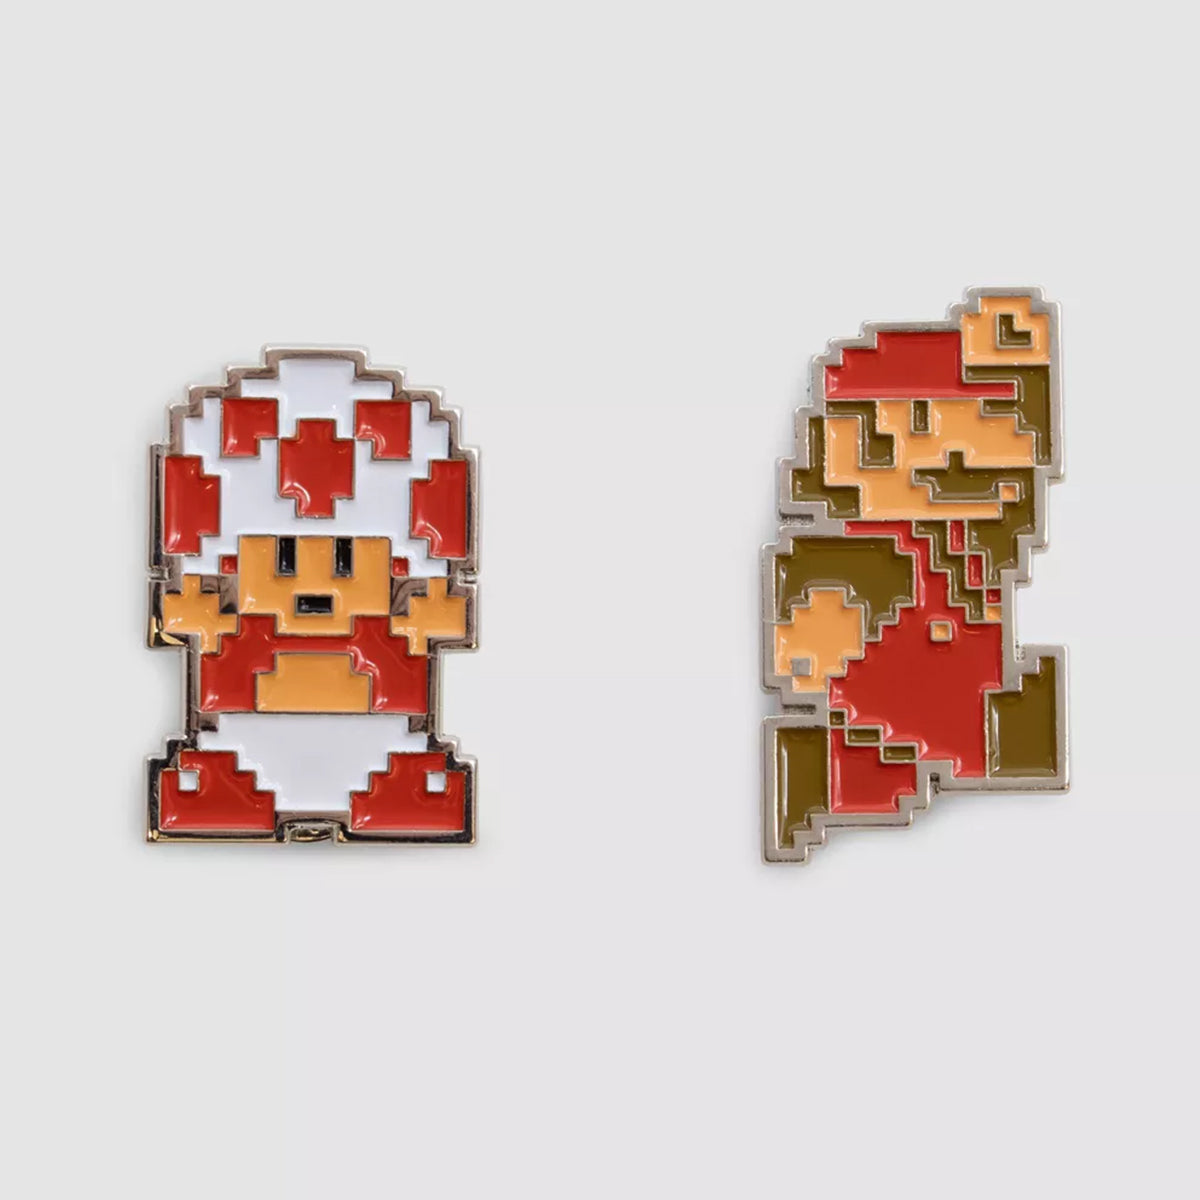 Collectors Bundle Super Mario Bros. (Caja de Colección)